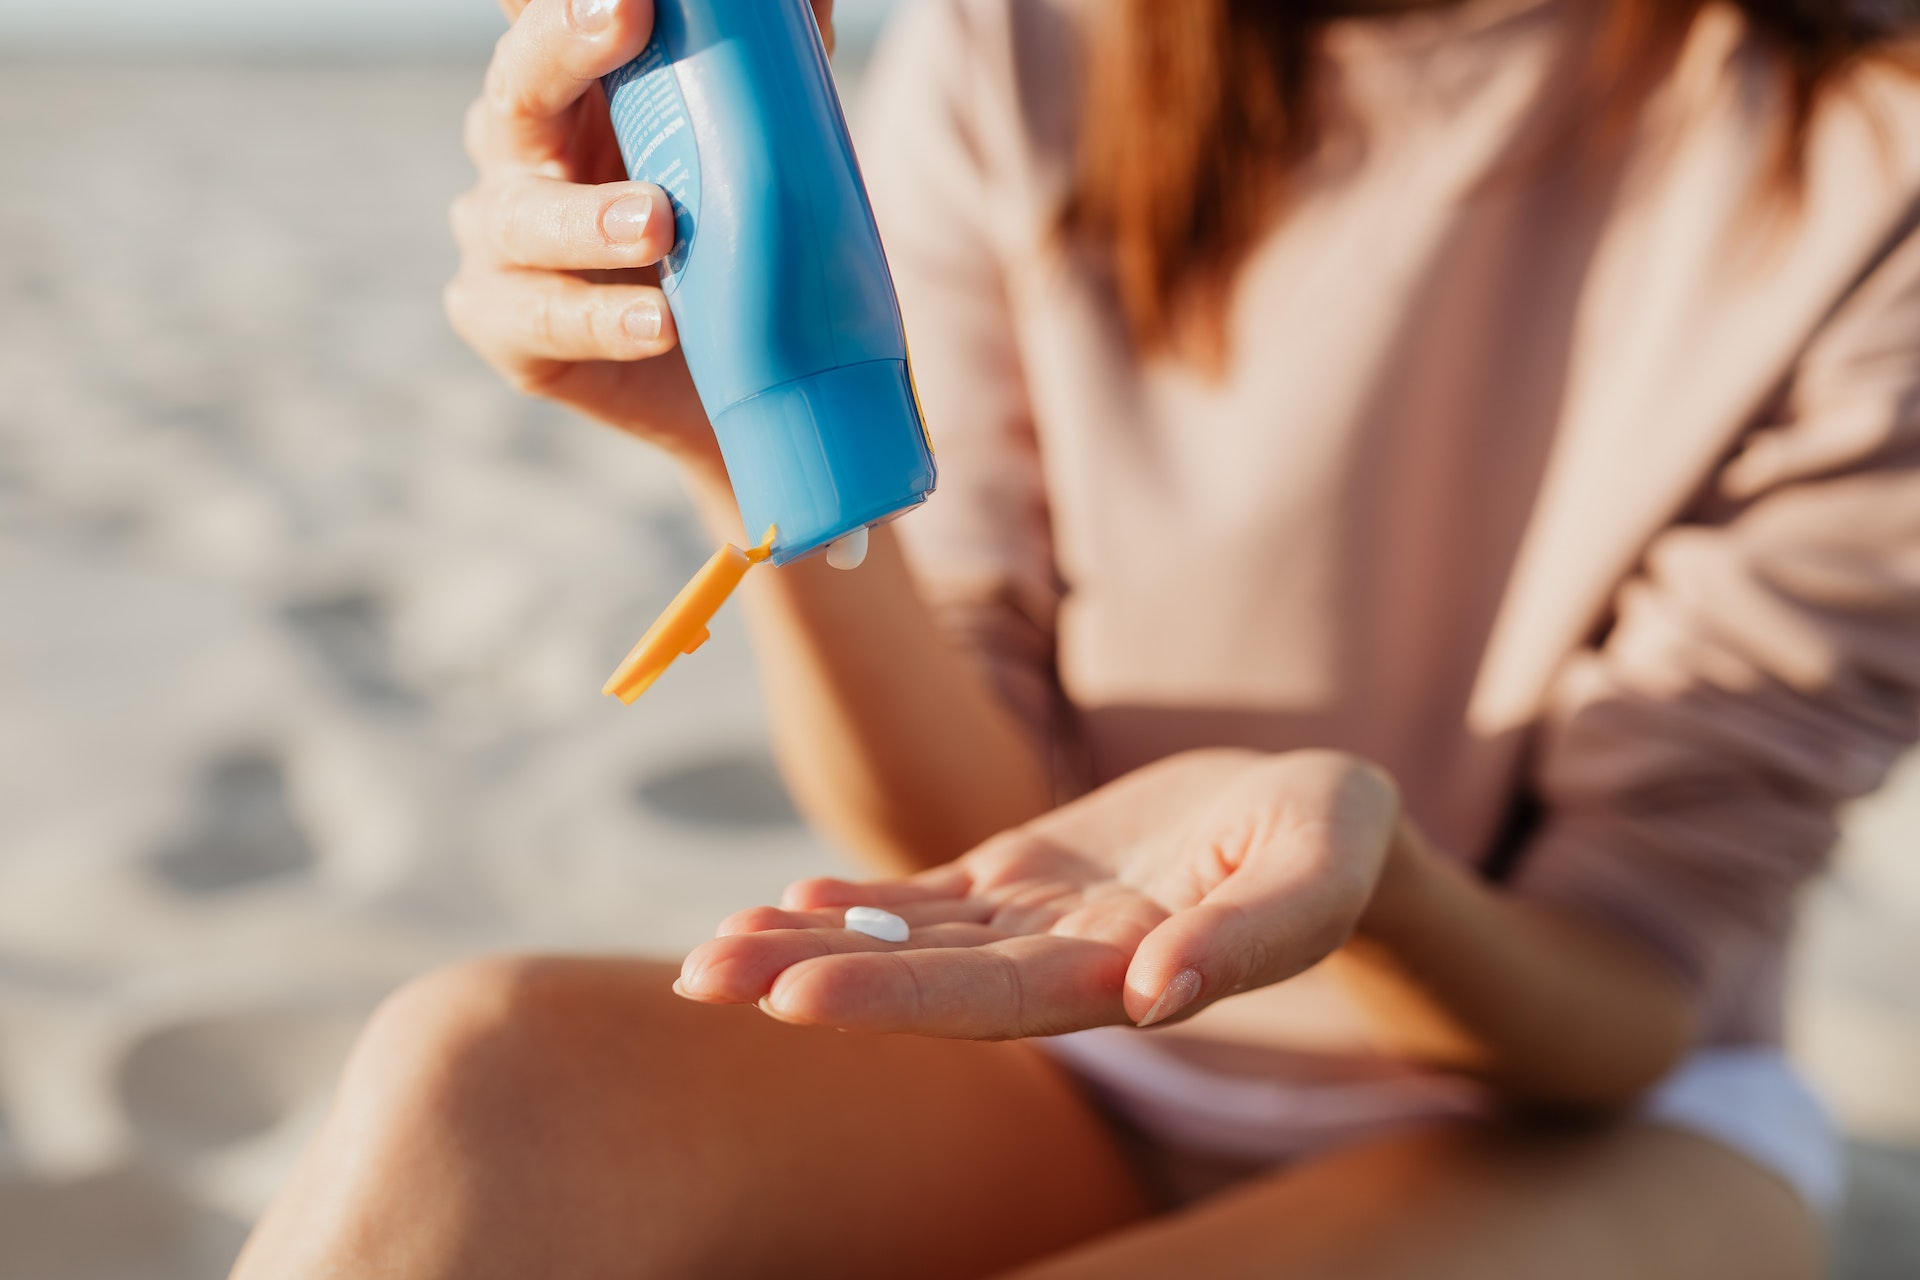 Jovem sentada na praia derramando o protetor solar em uma das mãos. Não é possível ver seu rosto. Ela usa um moletom leve, de mangas compridas, e um shorts branco. Imagem - Pexels.com